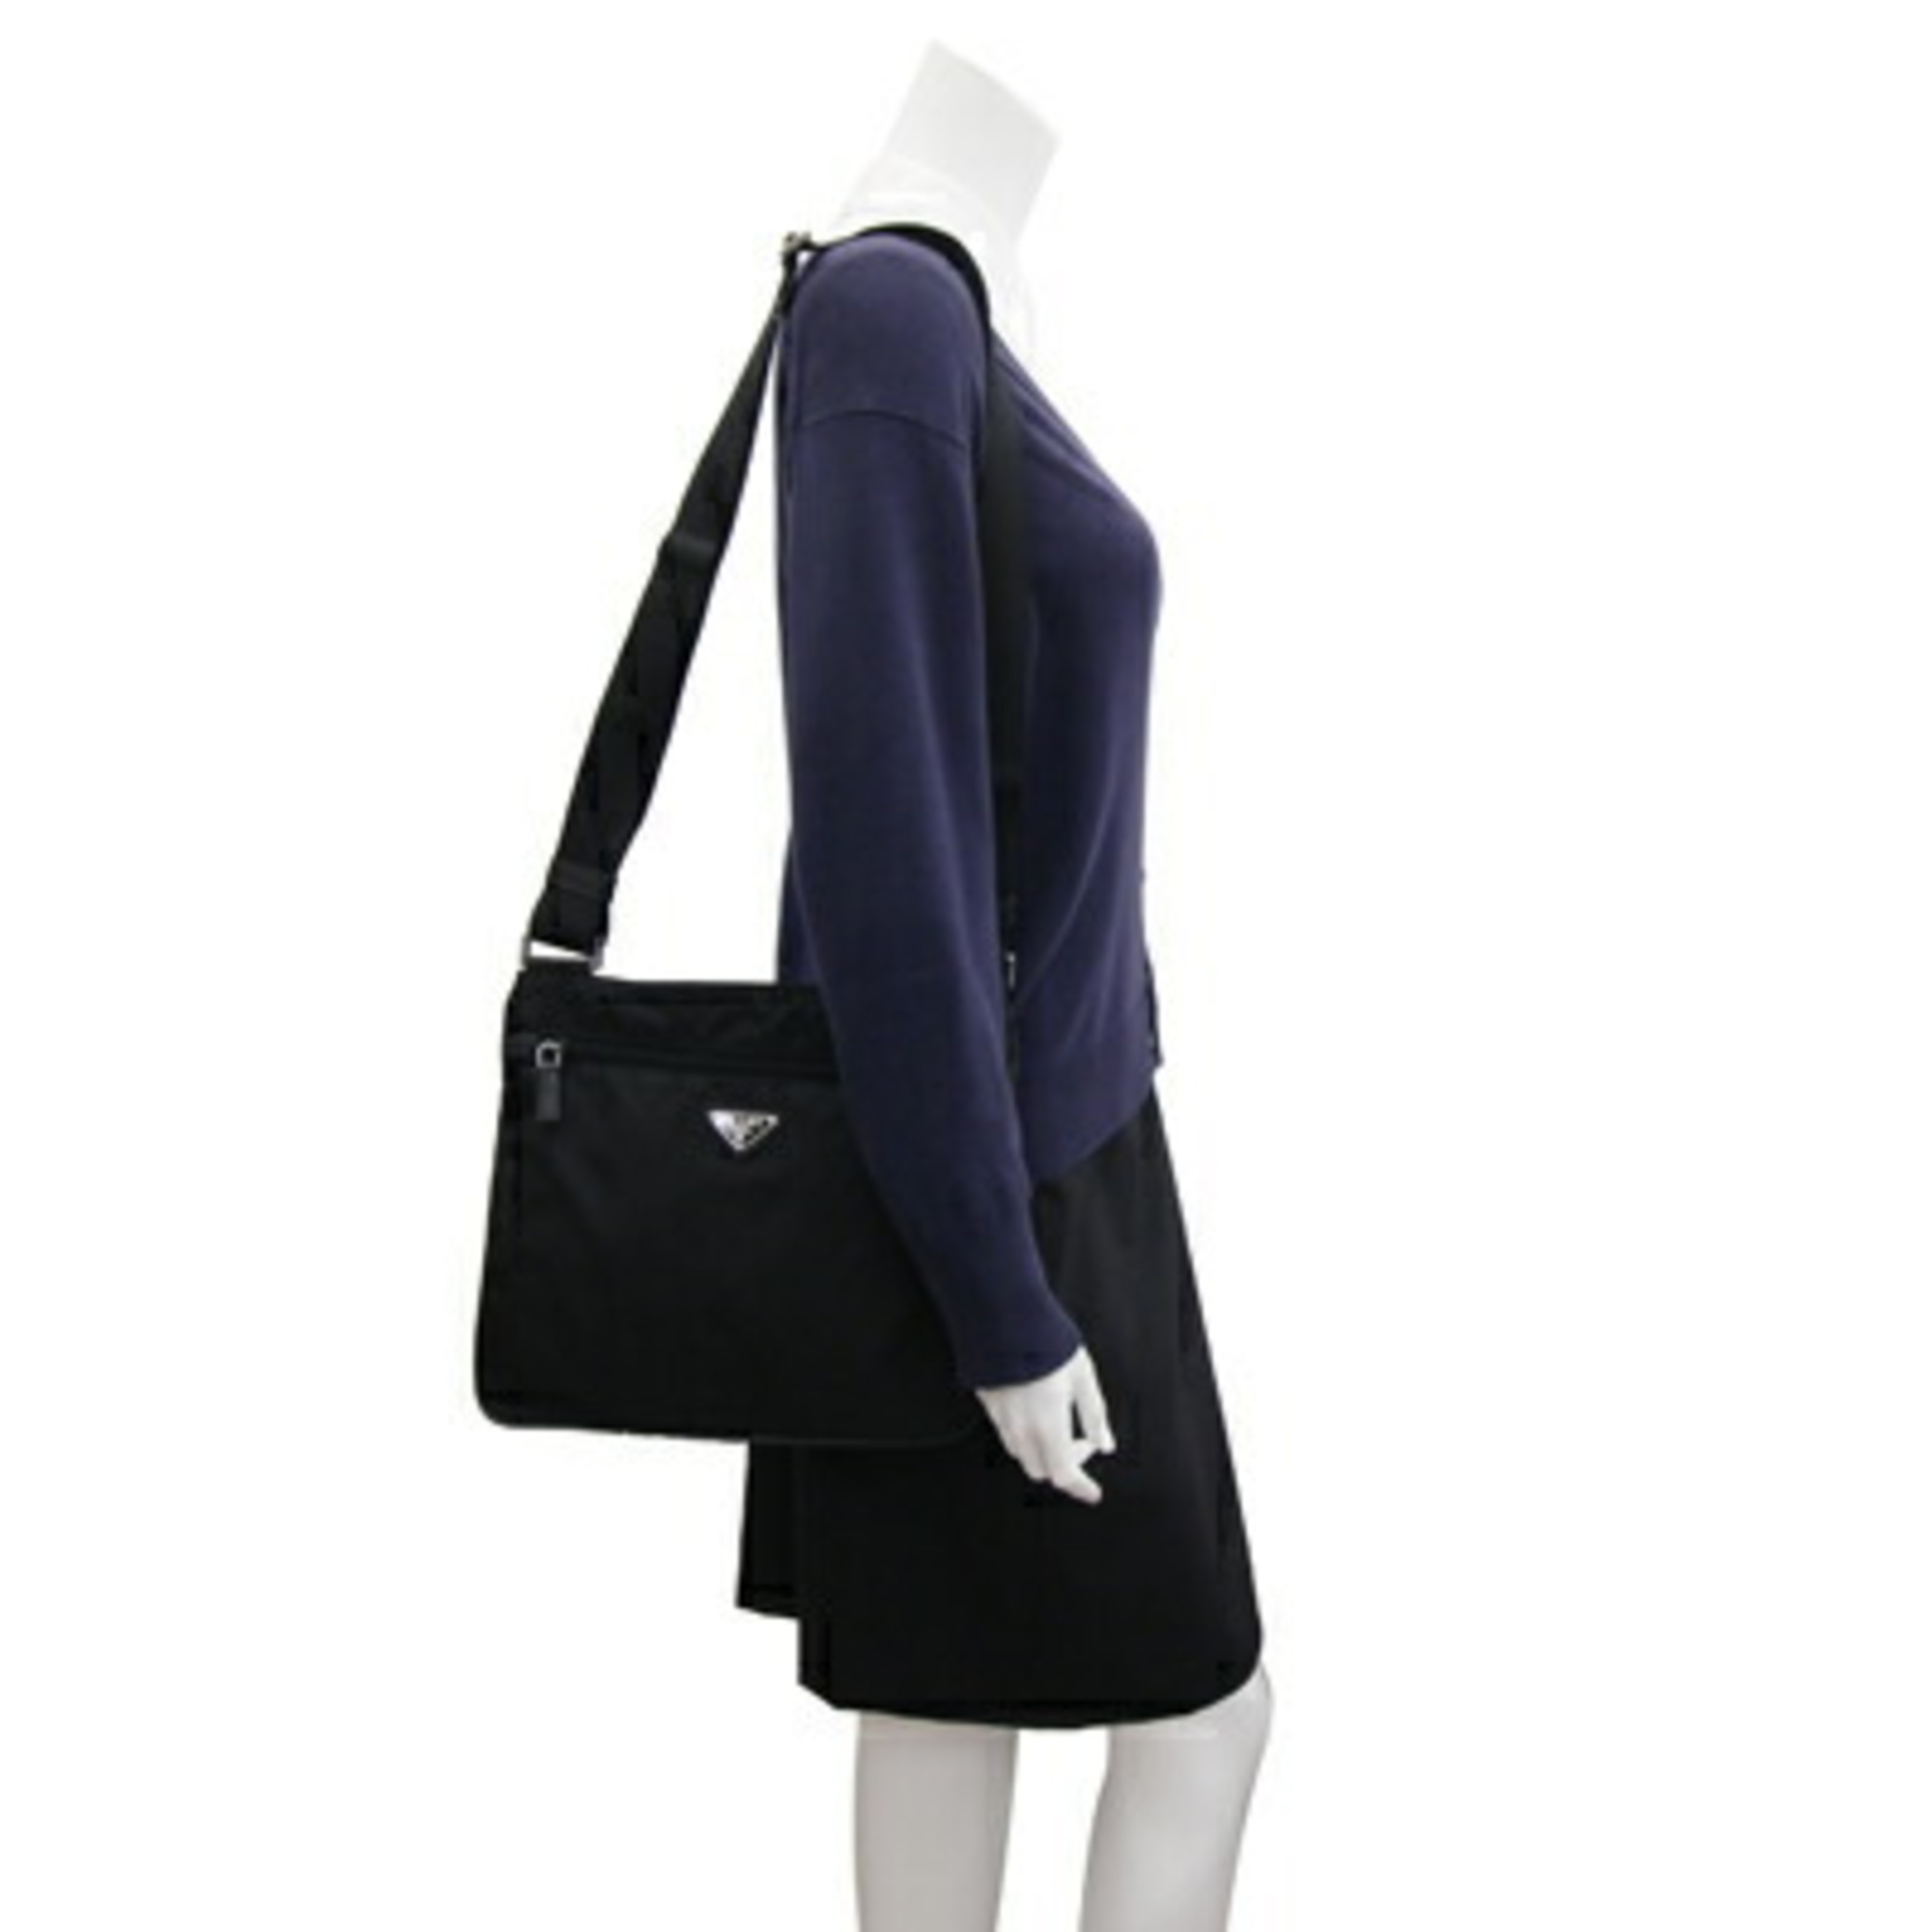 Prada shoulder bag black nylon ladies men PRADA